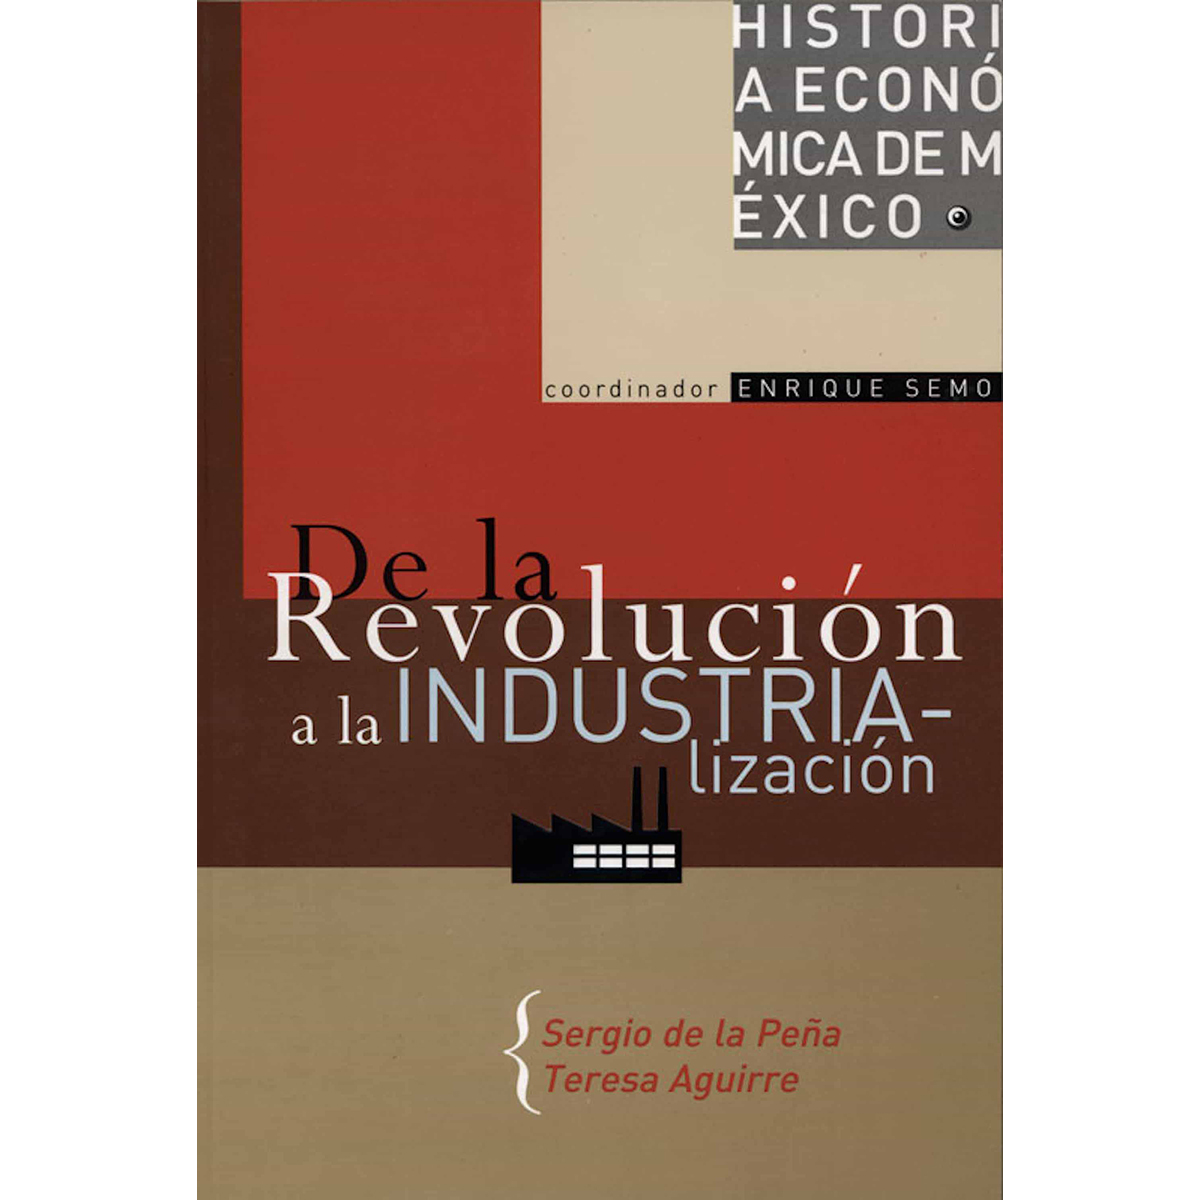 HISTORIA ECONÓMICA DE MÉXICO, VOL. 4. DE LA REVOLUCIÓN A LA INDUSTRIALIZACIÓN